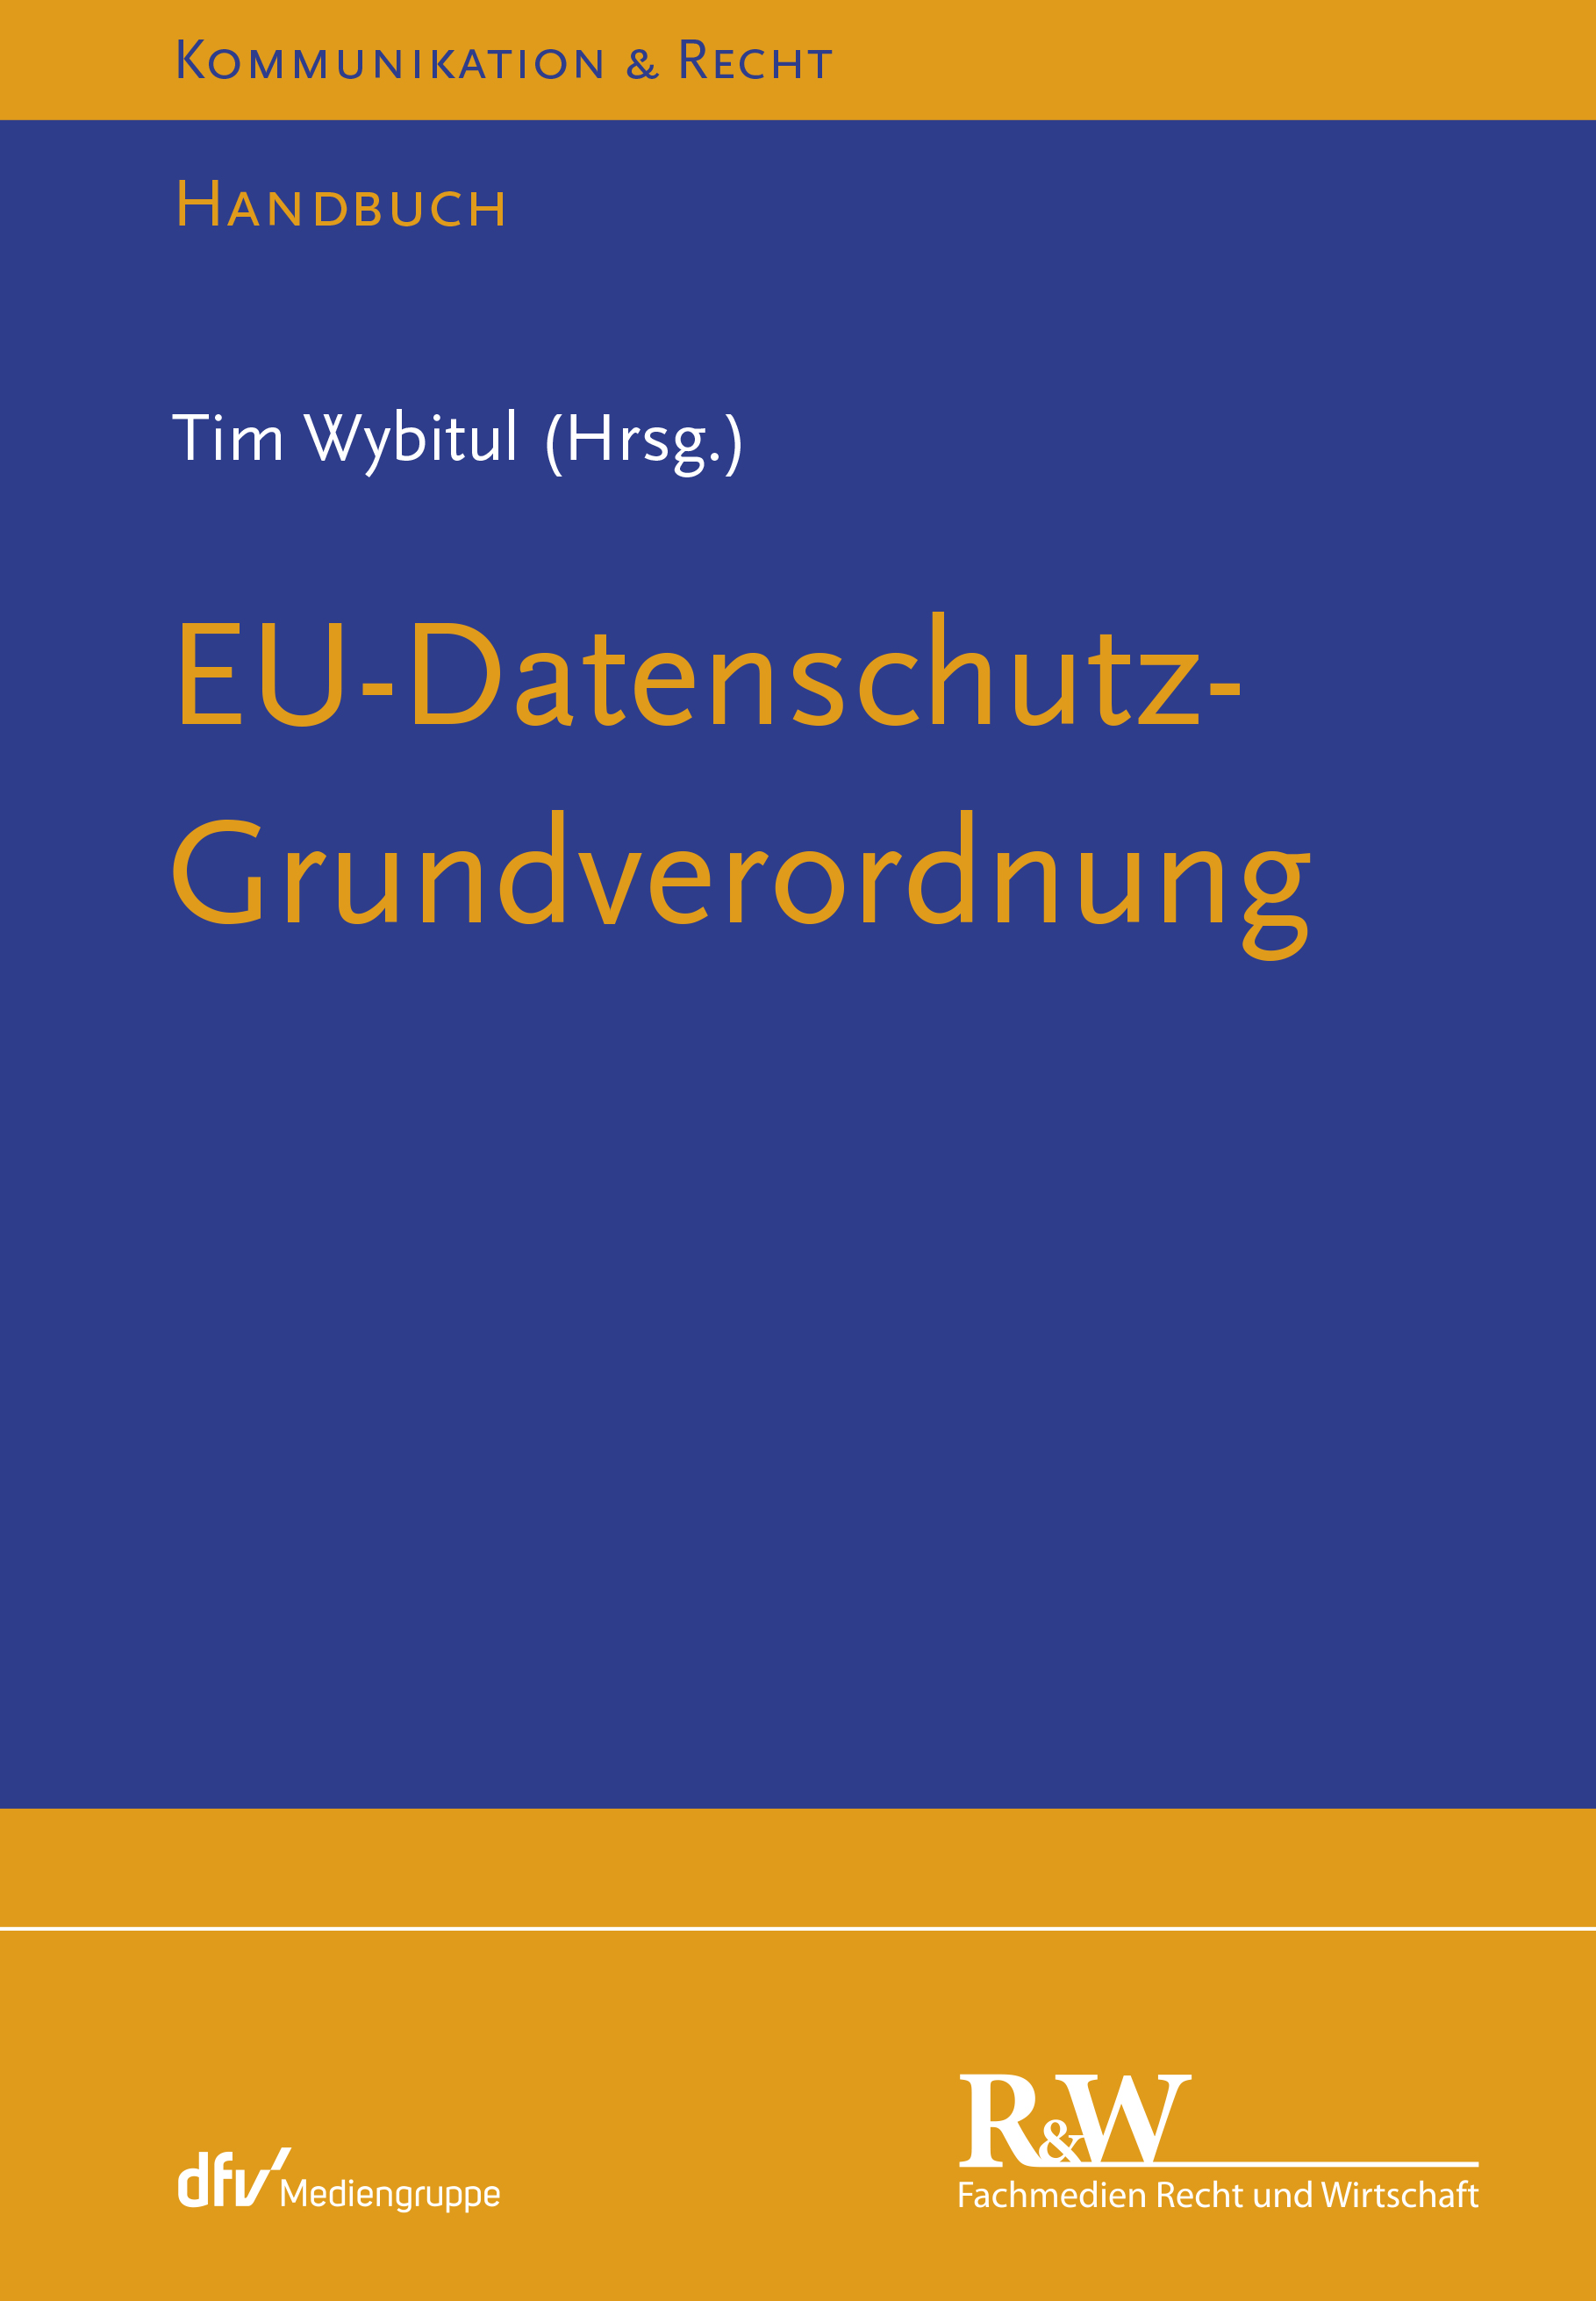 Abbildung: EU-Datenschutz-Grundverordnung